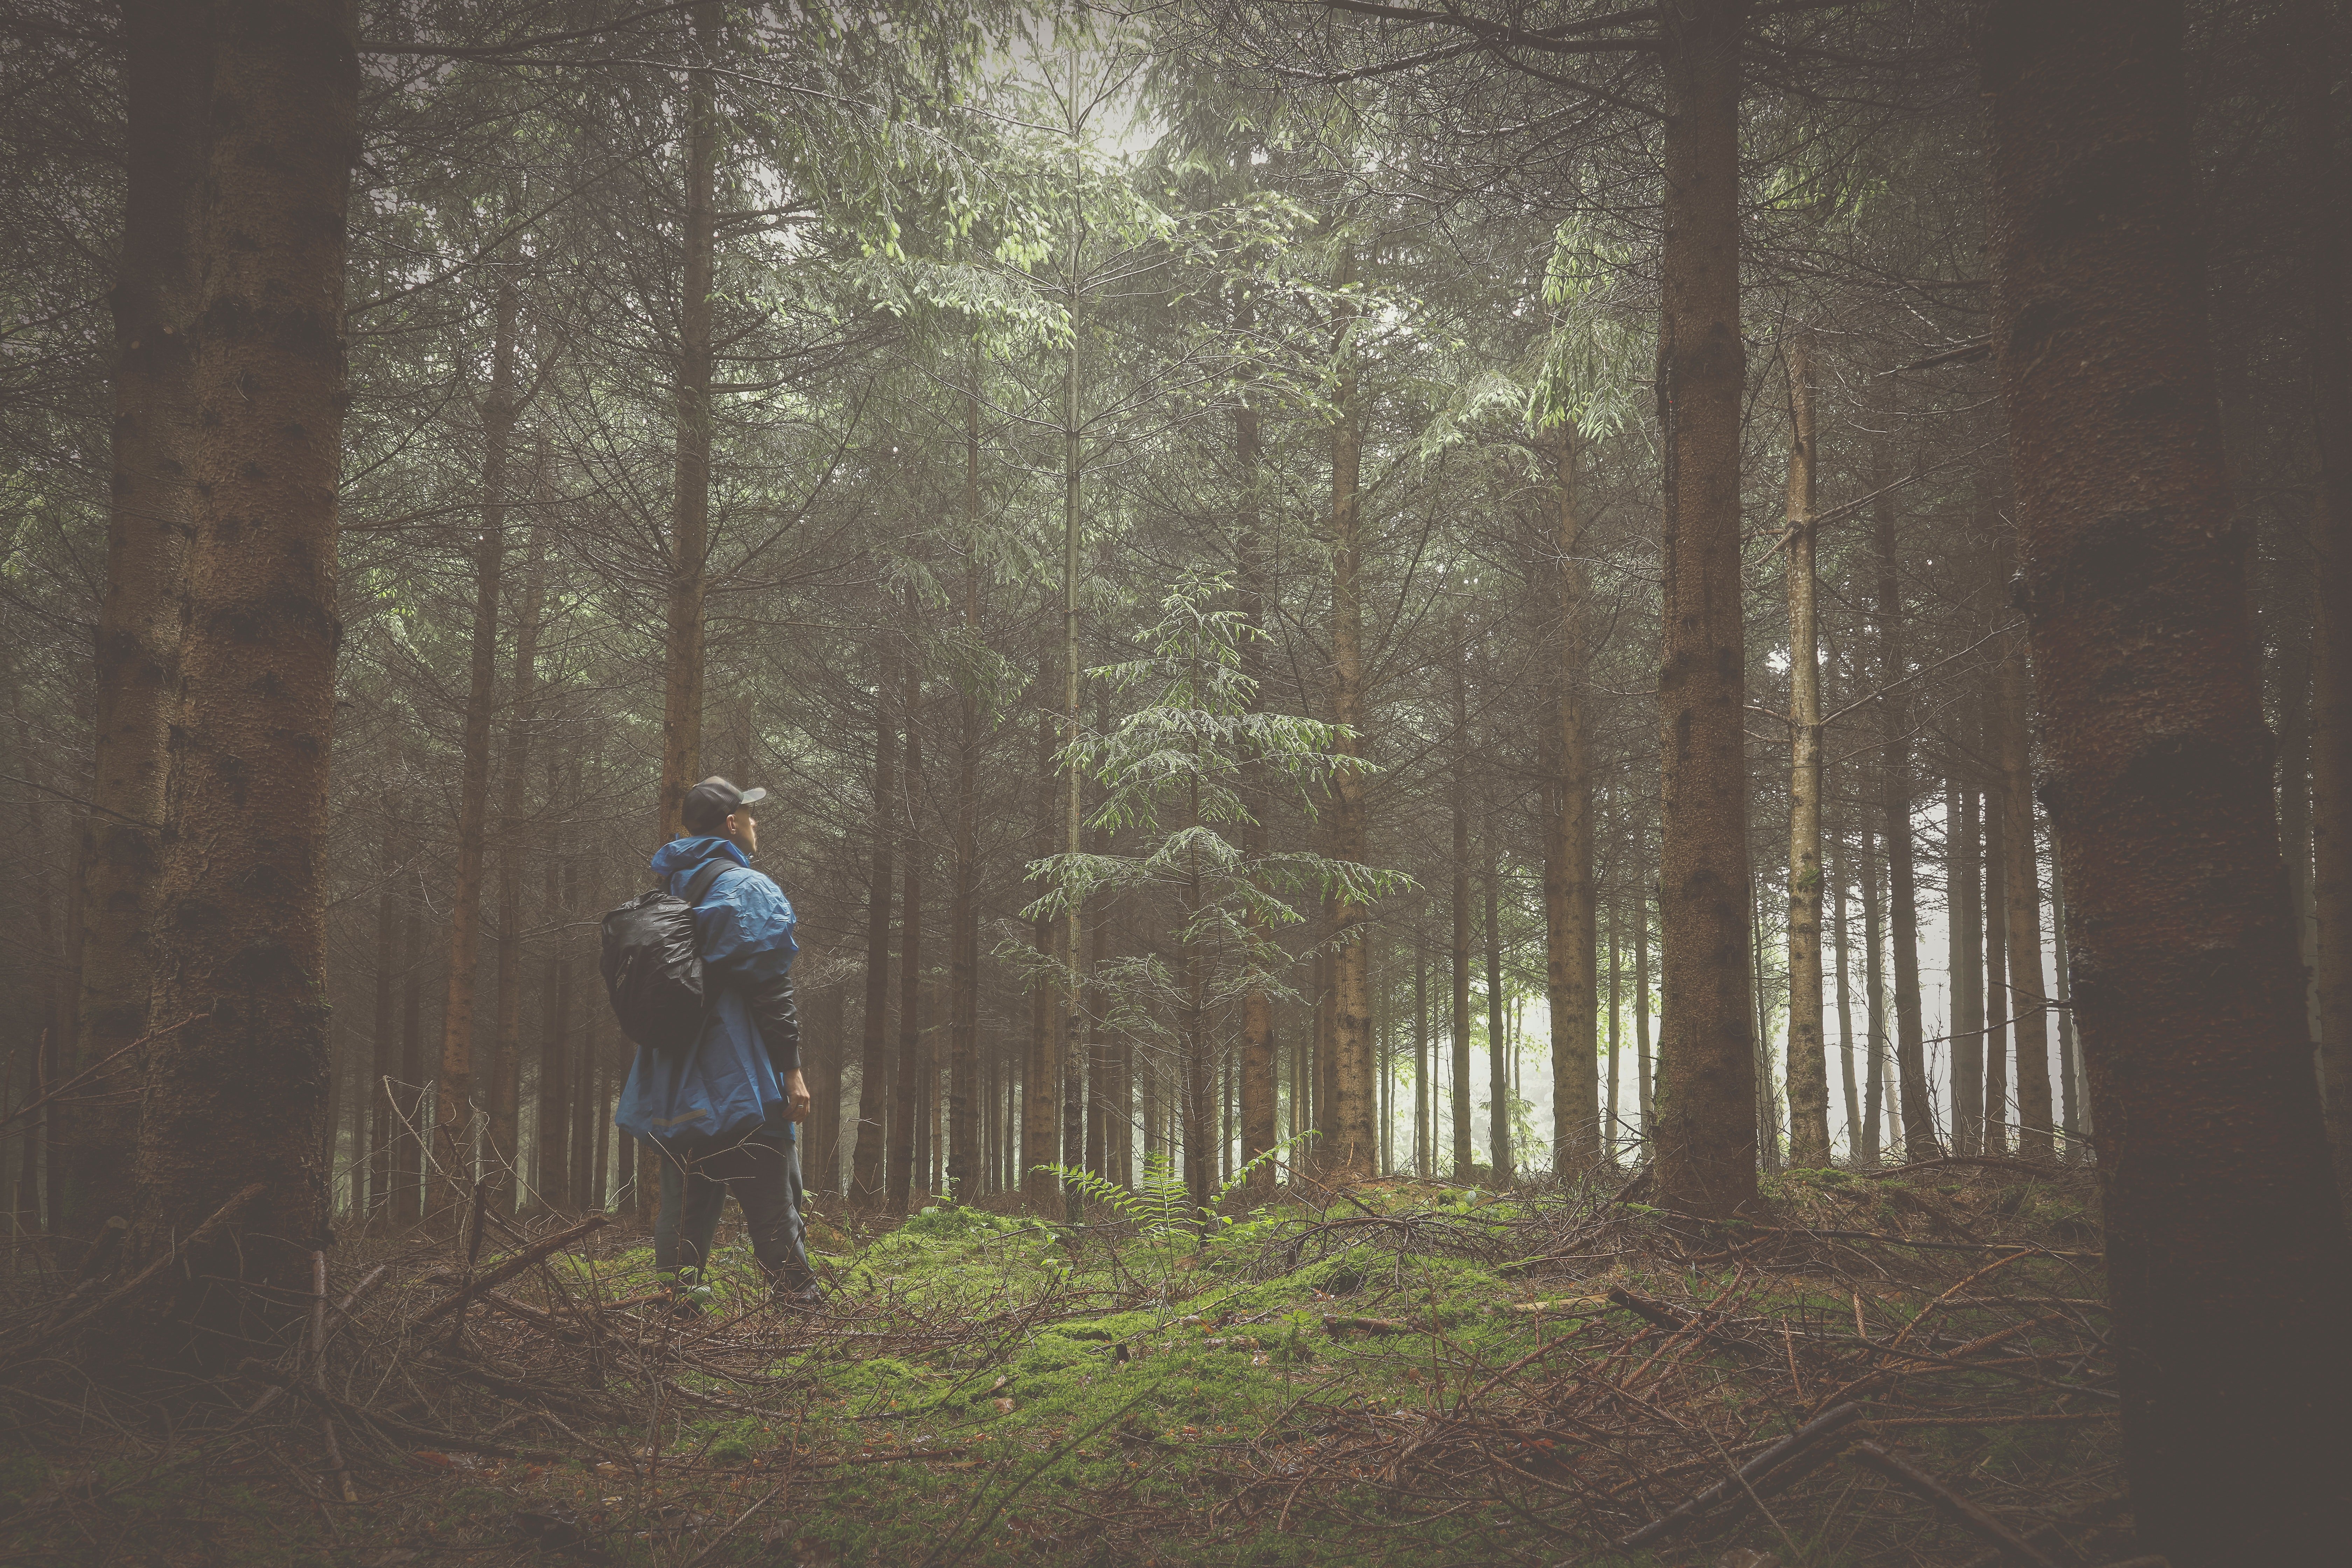 Una persona caminando por un bosque. | Foto: Pexels